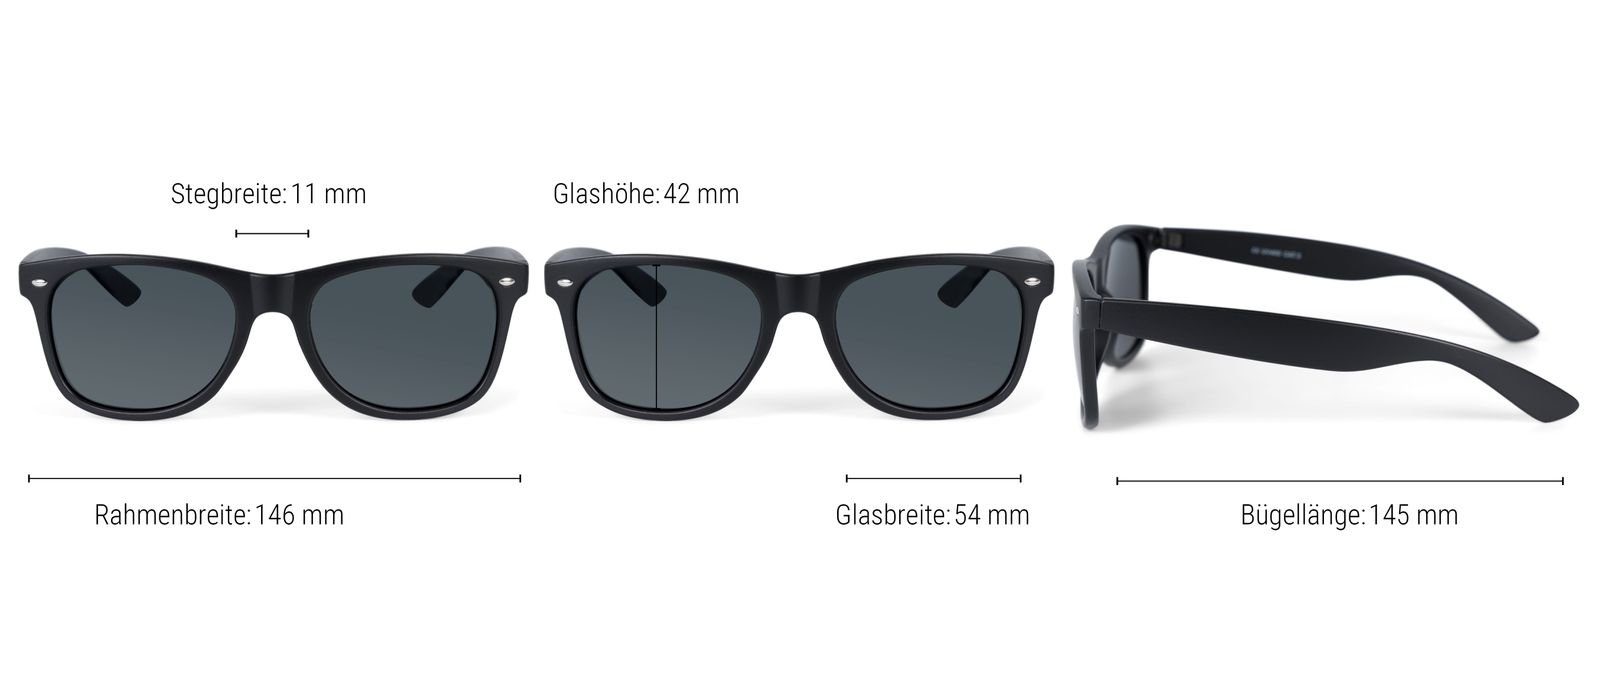 Polarisiert styleBREAKER Grün-Blau verspiegelt / Gestell (1-St) Glas Schwarz Sonnenbrille